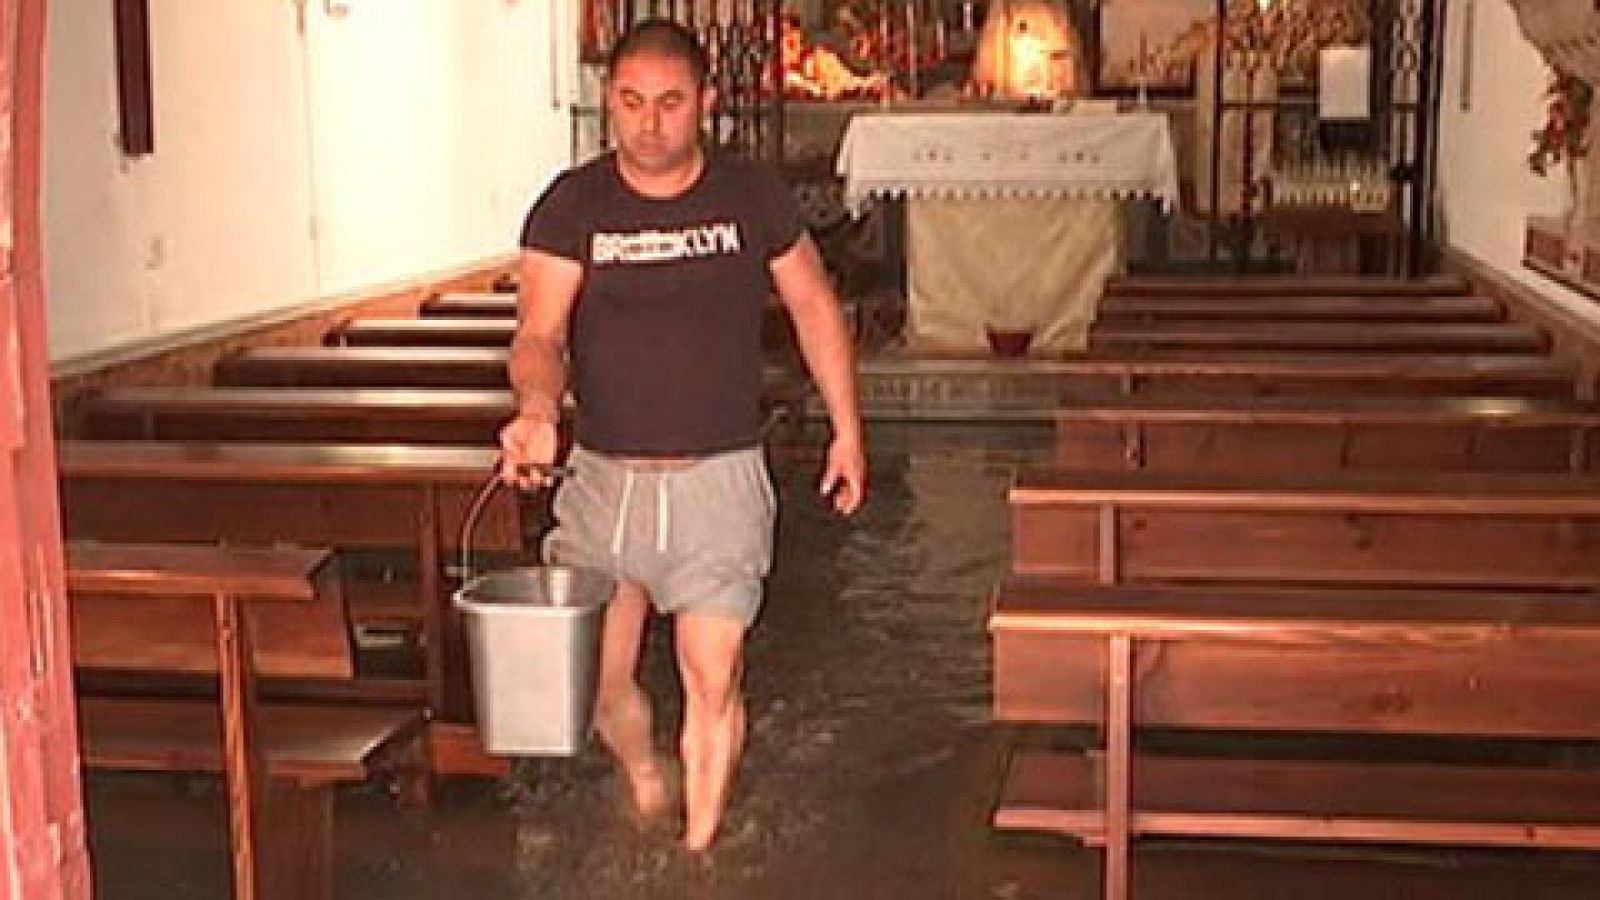 Inundaciones Sanlúcar de Barrameda: Una fuerte tromba de agua inunda el centro de Sanlúcar de Barrameda